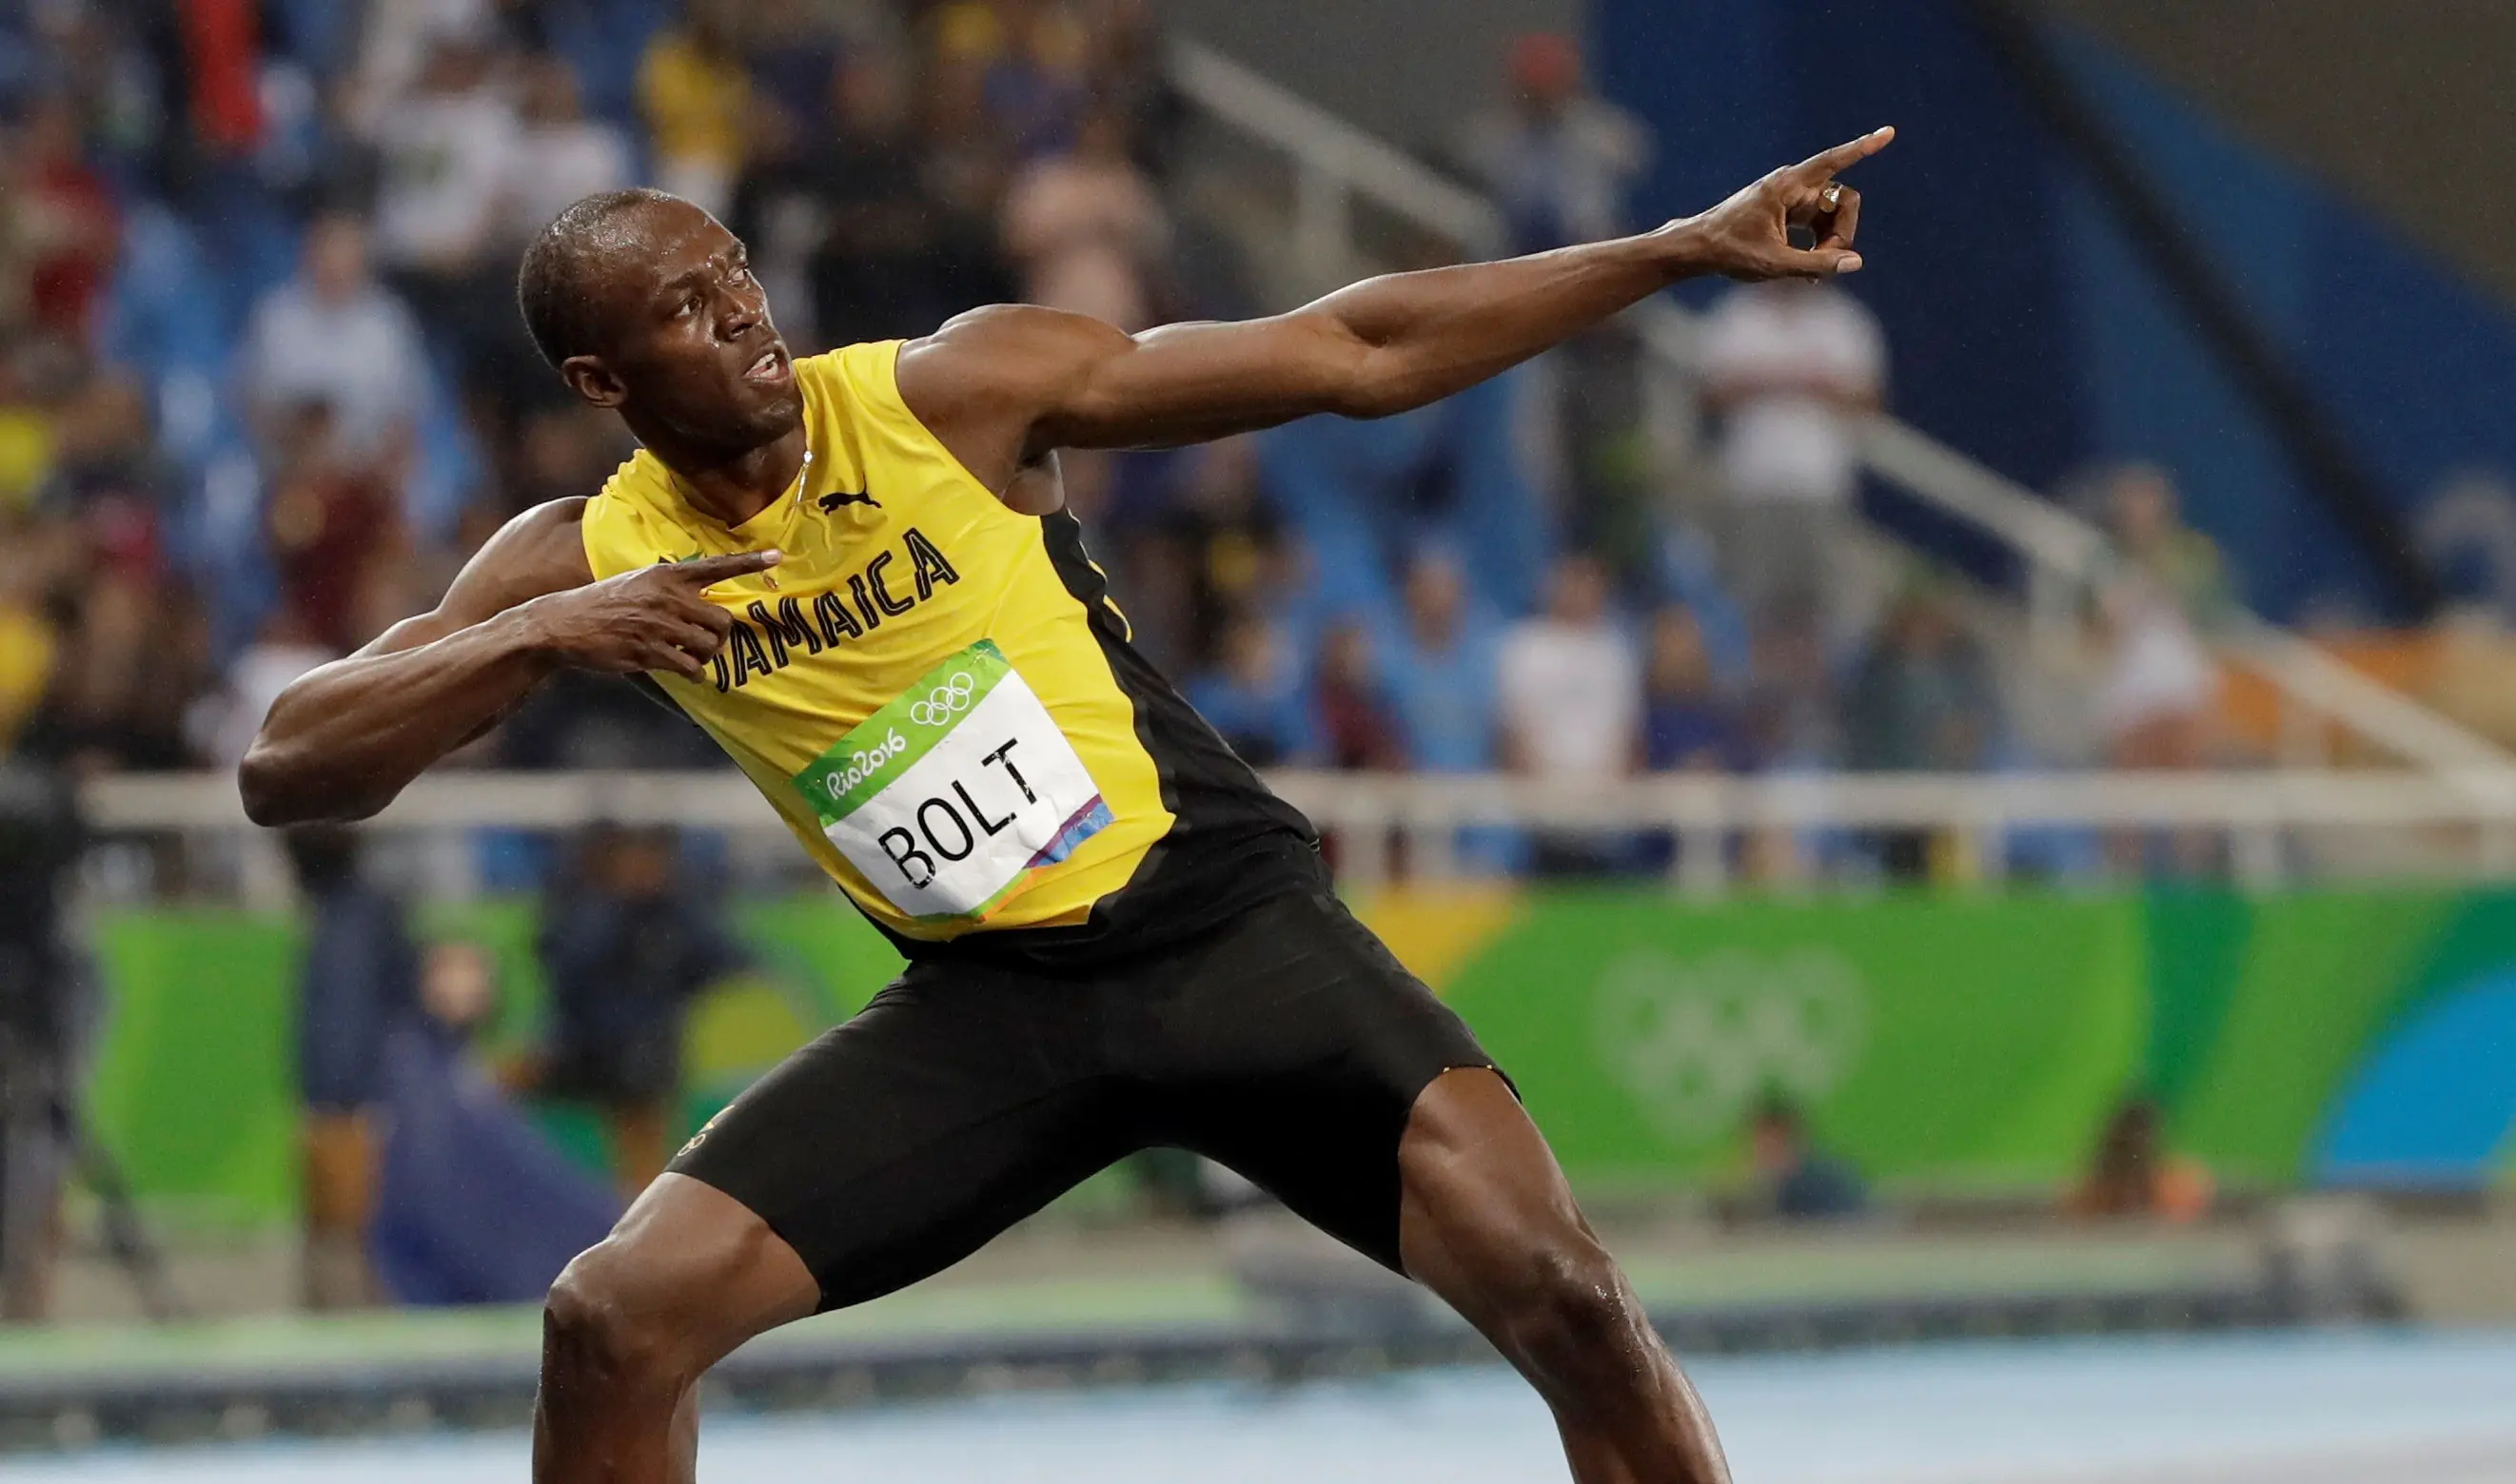 Pelari Jamaika, Usain Bolt, meraih medali emas pada nomor 200 meter Olimpiade Rio de Janiero 2016, Kamis (18/8/2016) atau Jumat pagi WIB. (AP Photo/David J. Phillip)